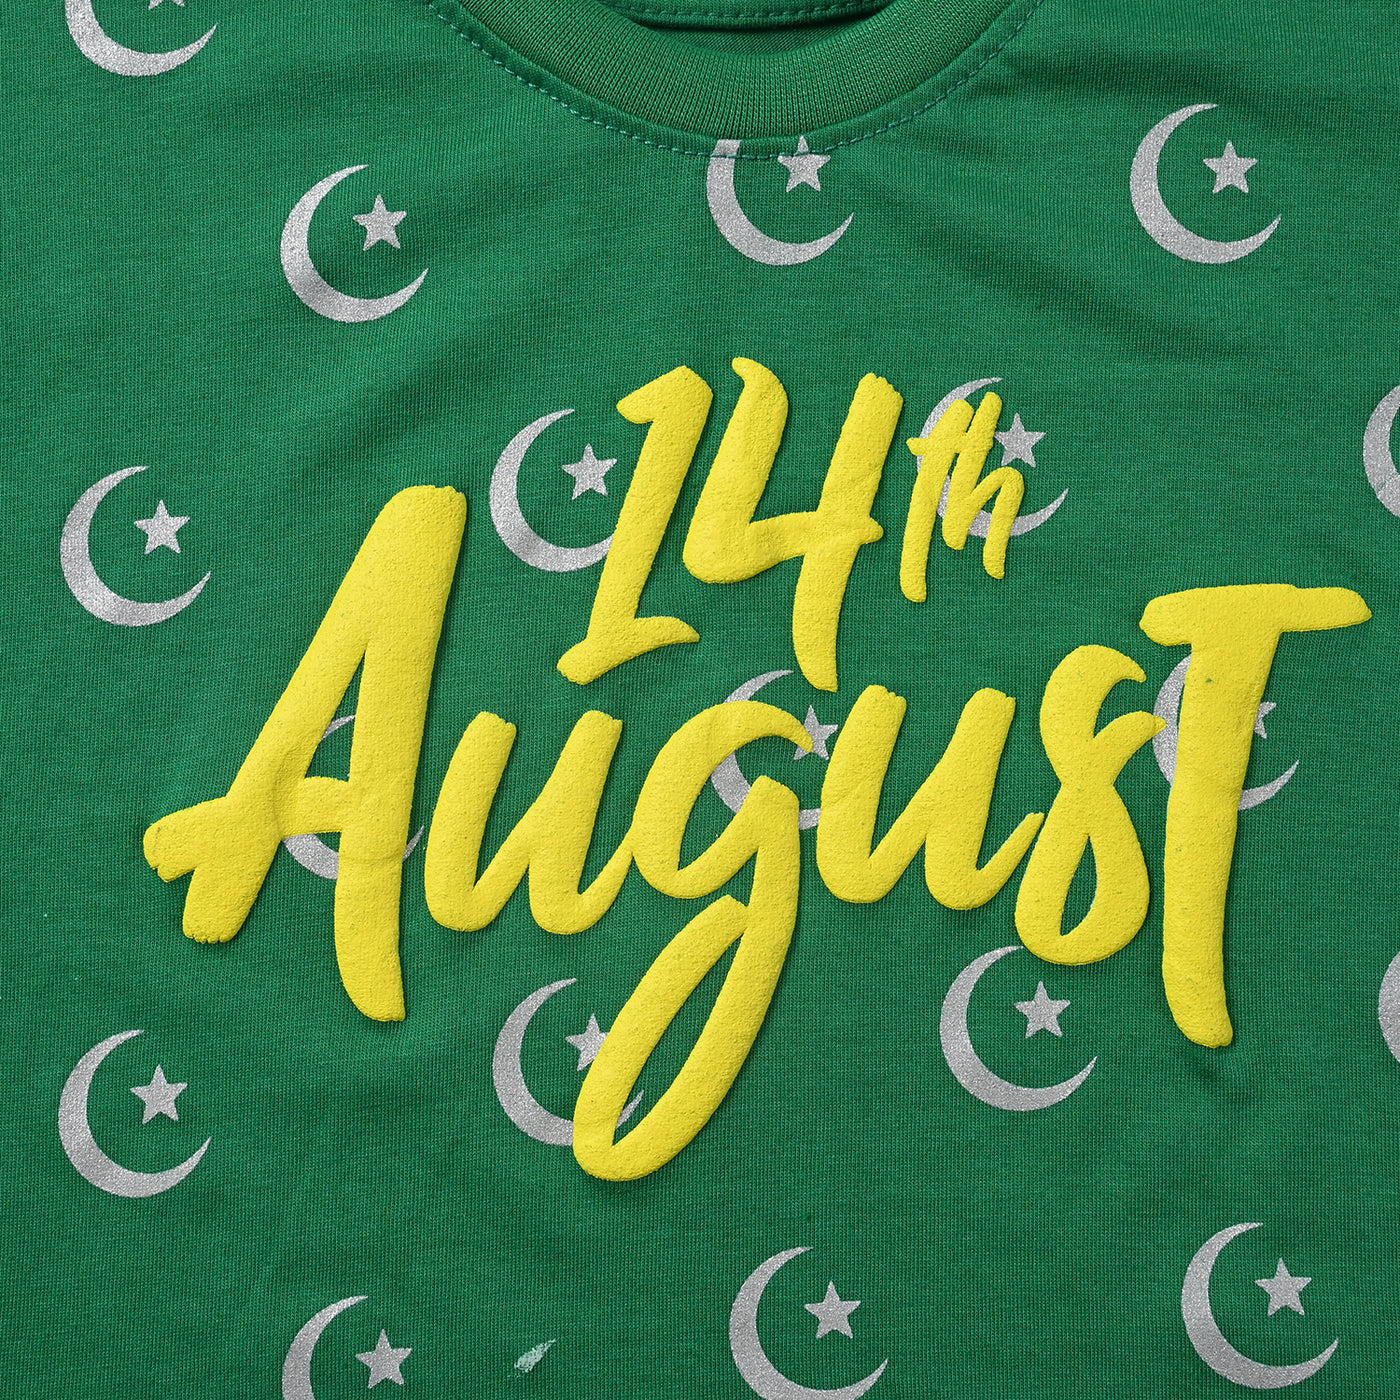 Girls PC Jersey T-Shirt H/S 14 August-Fern Green